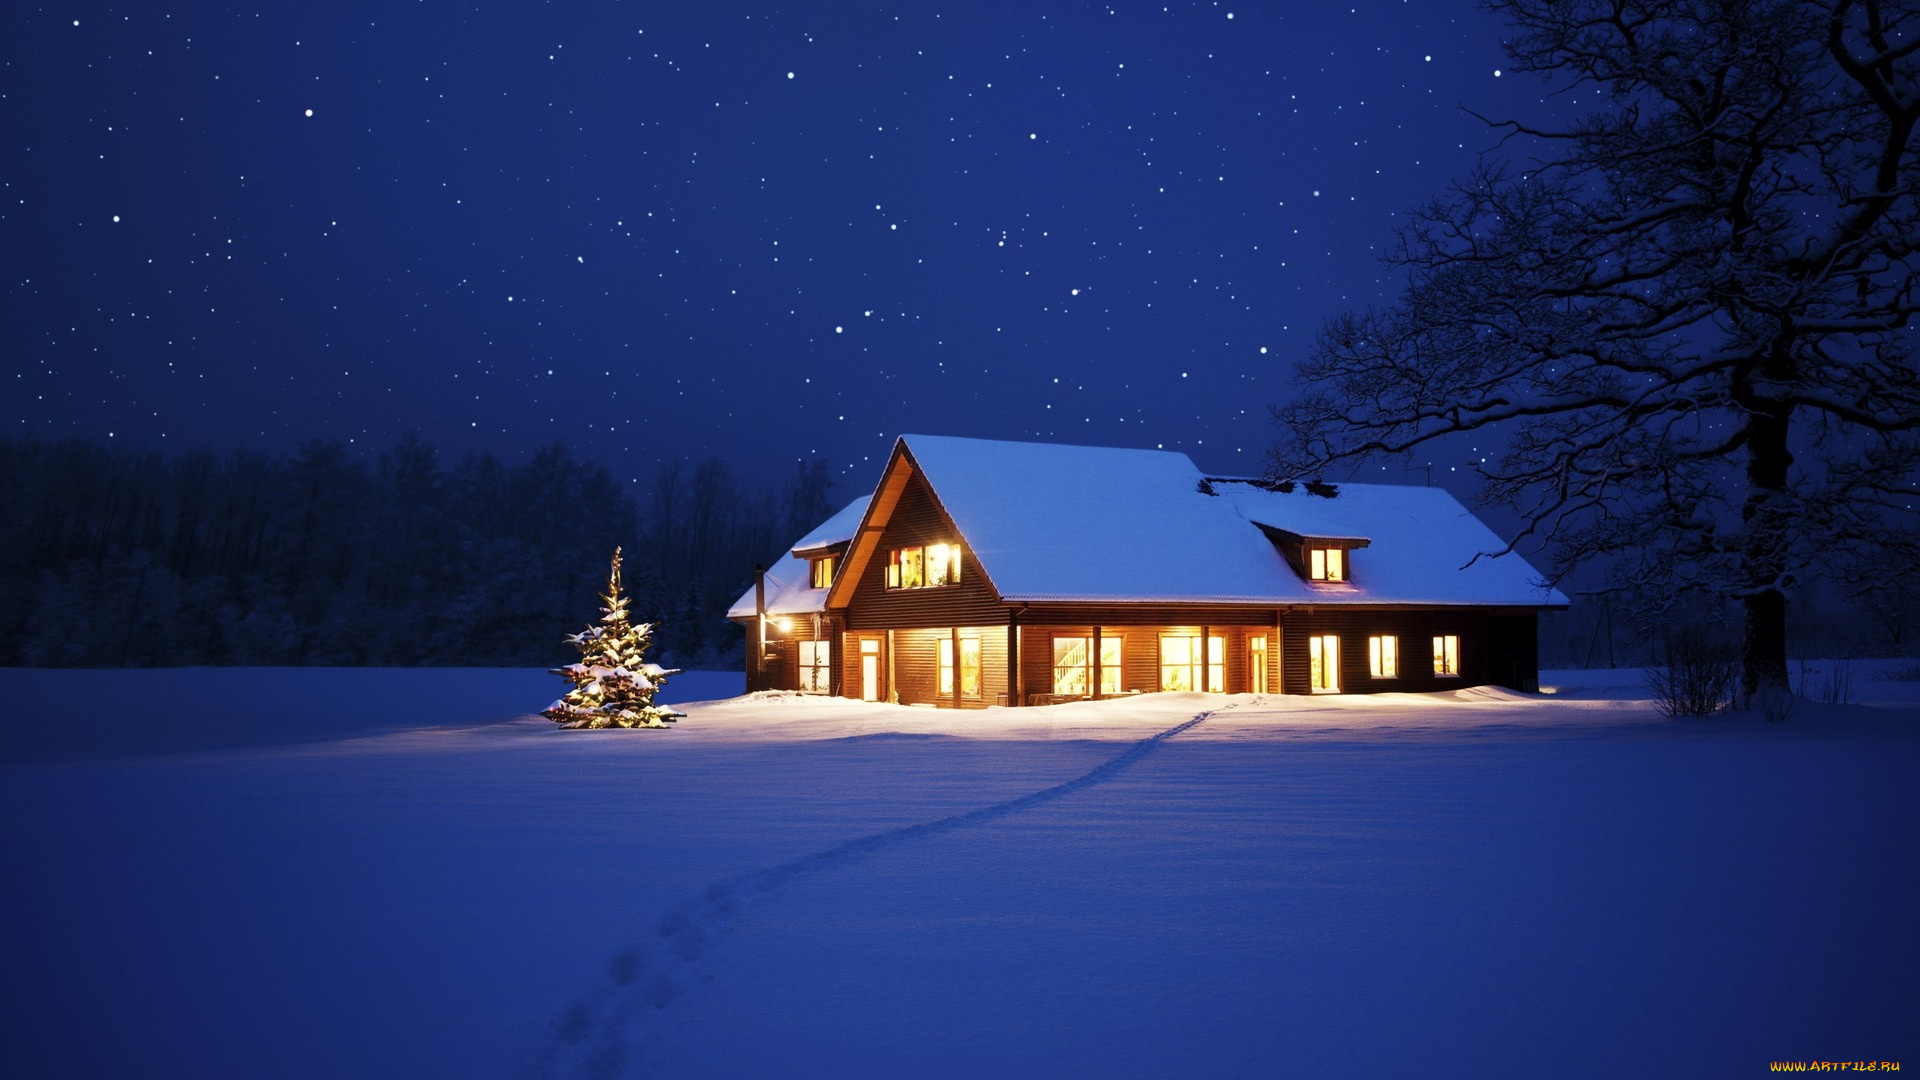 природа, зима, ночь, снег, дом, елка